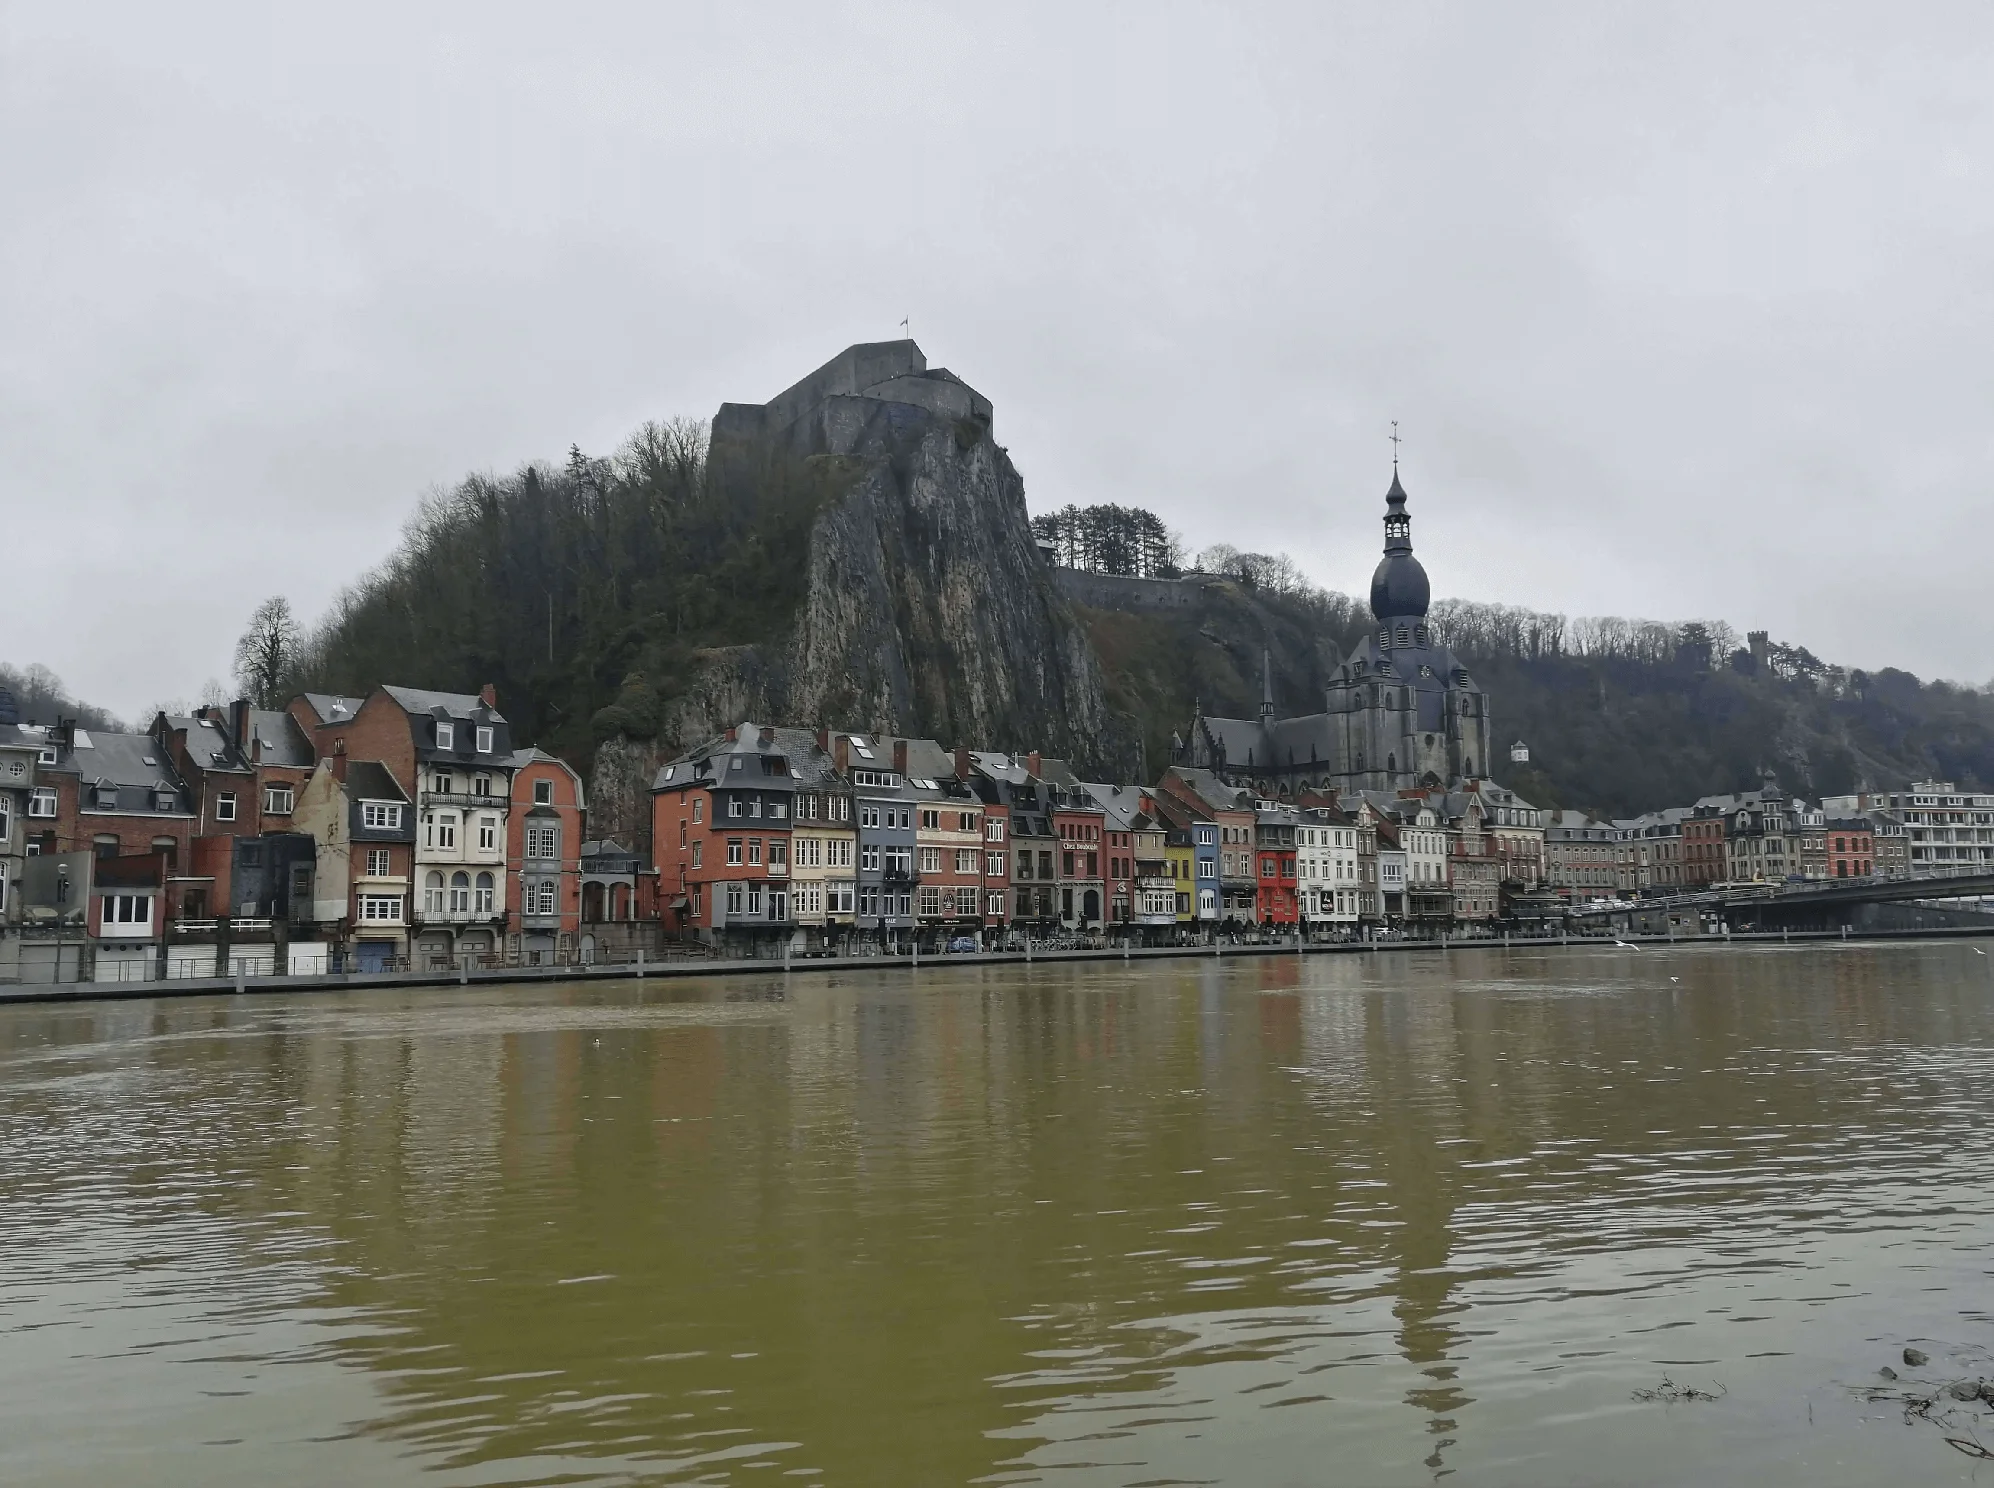  Ανακαλύπτοντας τη Ντινάν (Dinant) στο Βέλγιο στις Όχθες του Meuse 